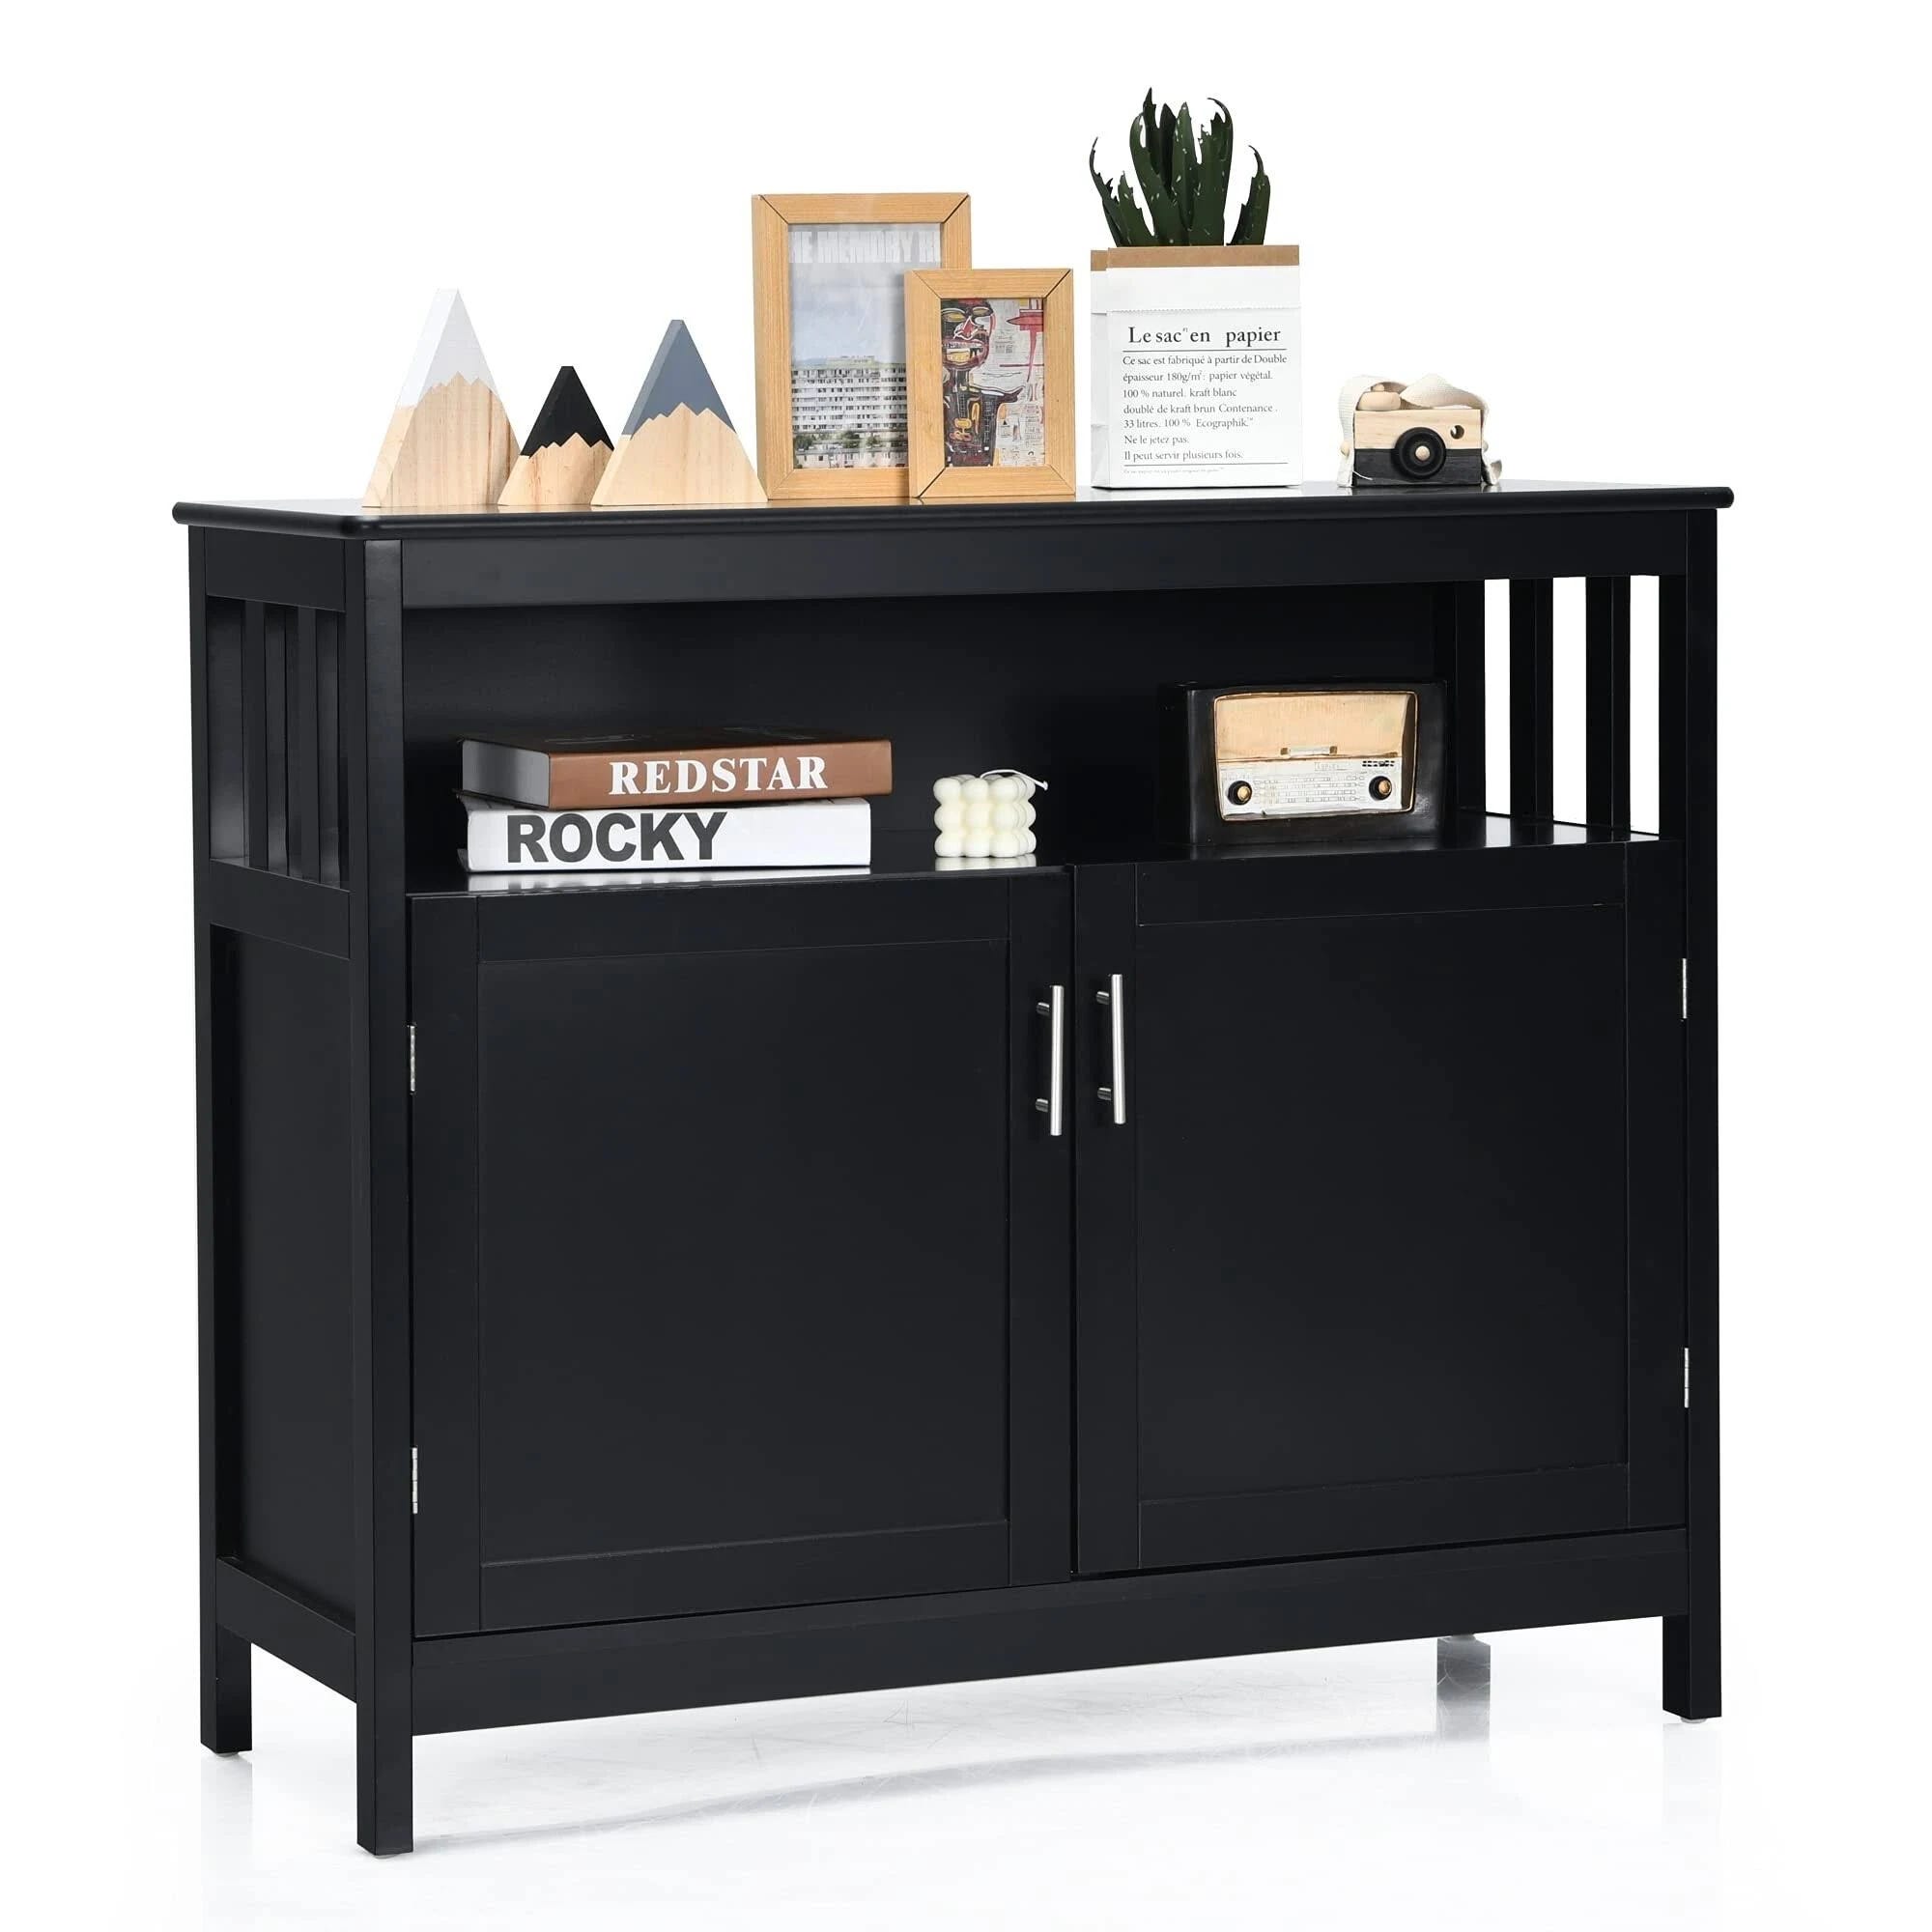 Stylish, Multifunctional Whiskey Cabinet with Adjustable Shelves | Image